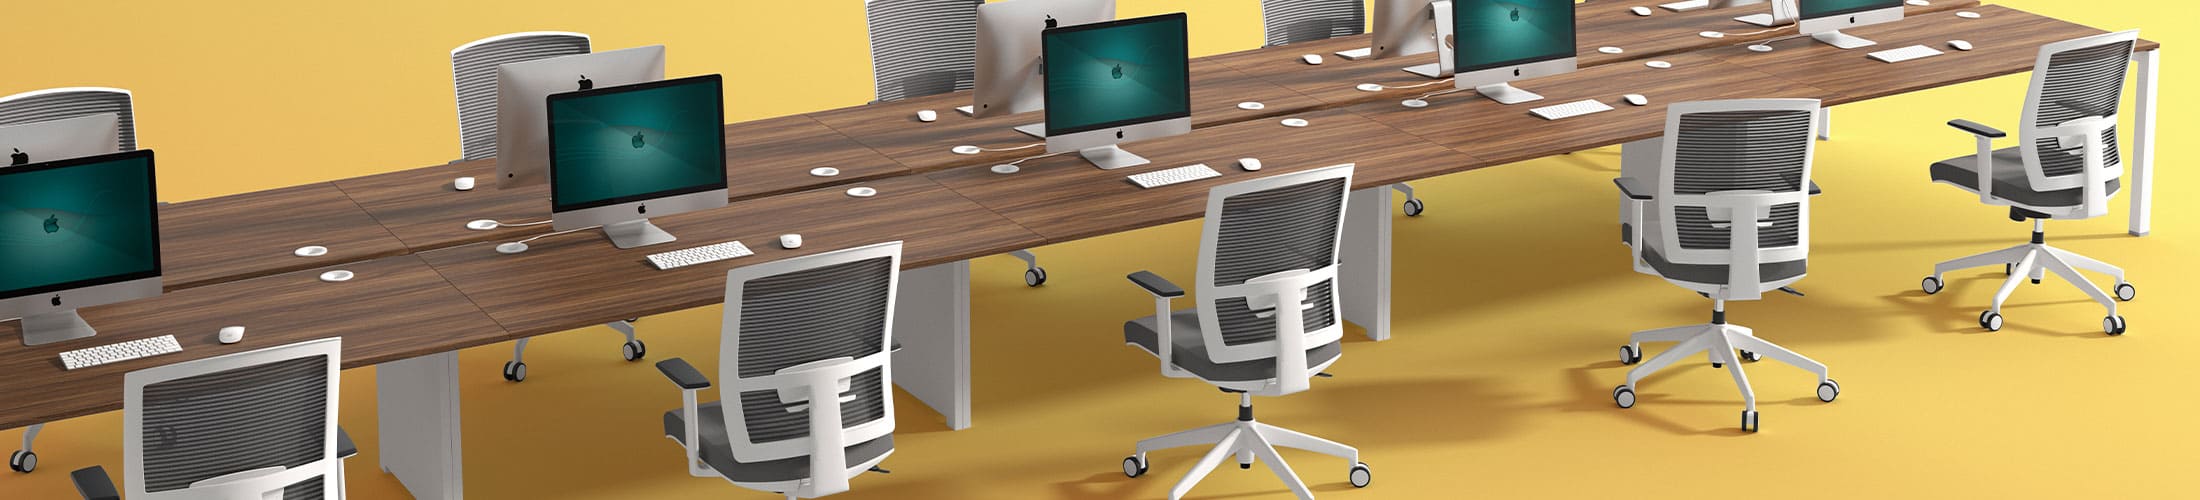 Elegir mesas de oficina redondas o rectangulares ¿cuándo es mejor?